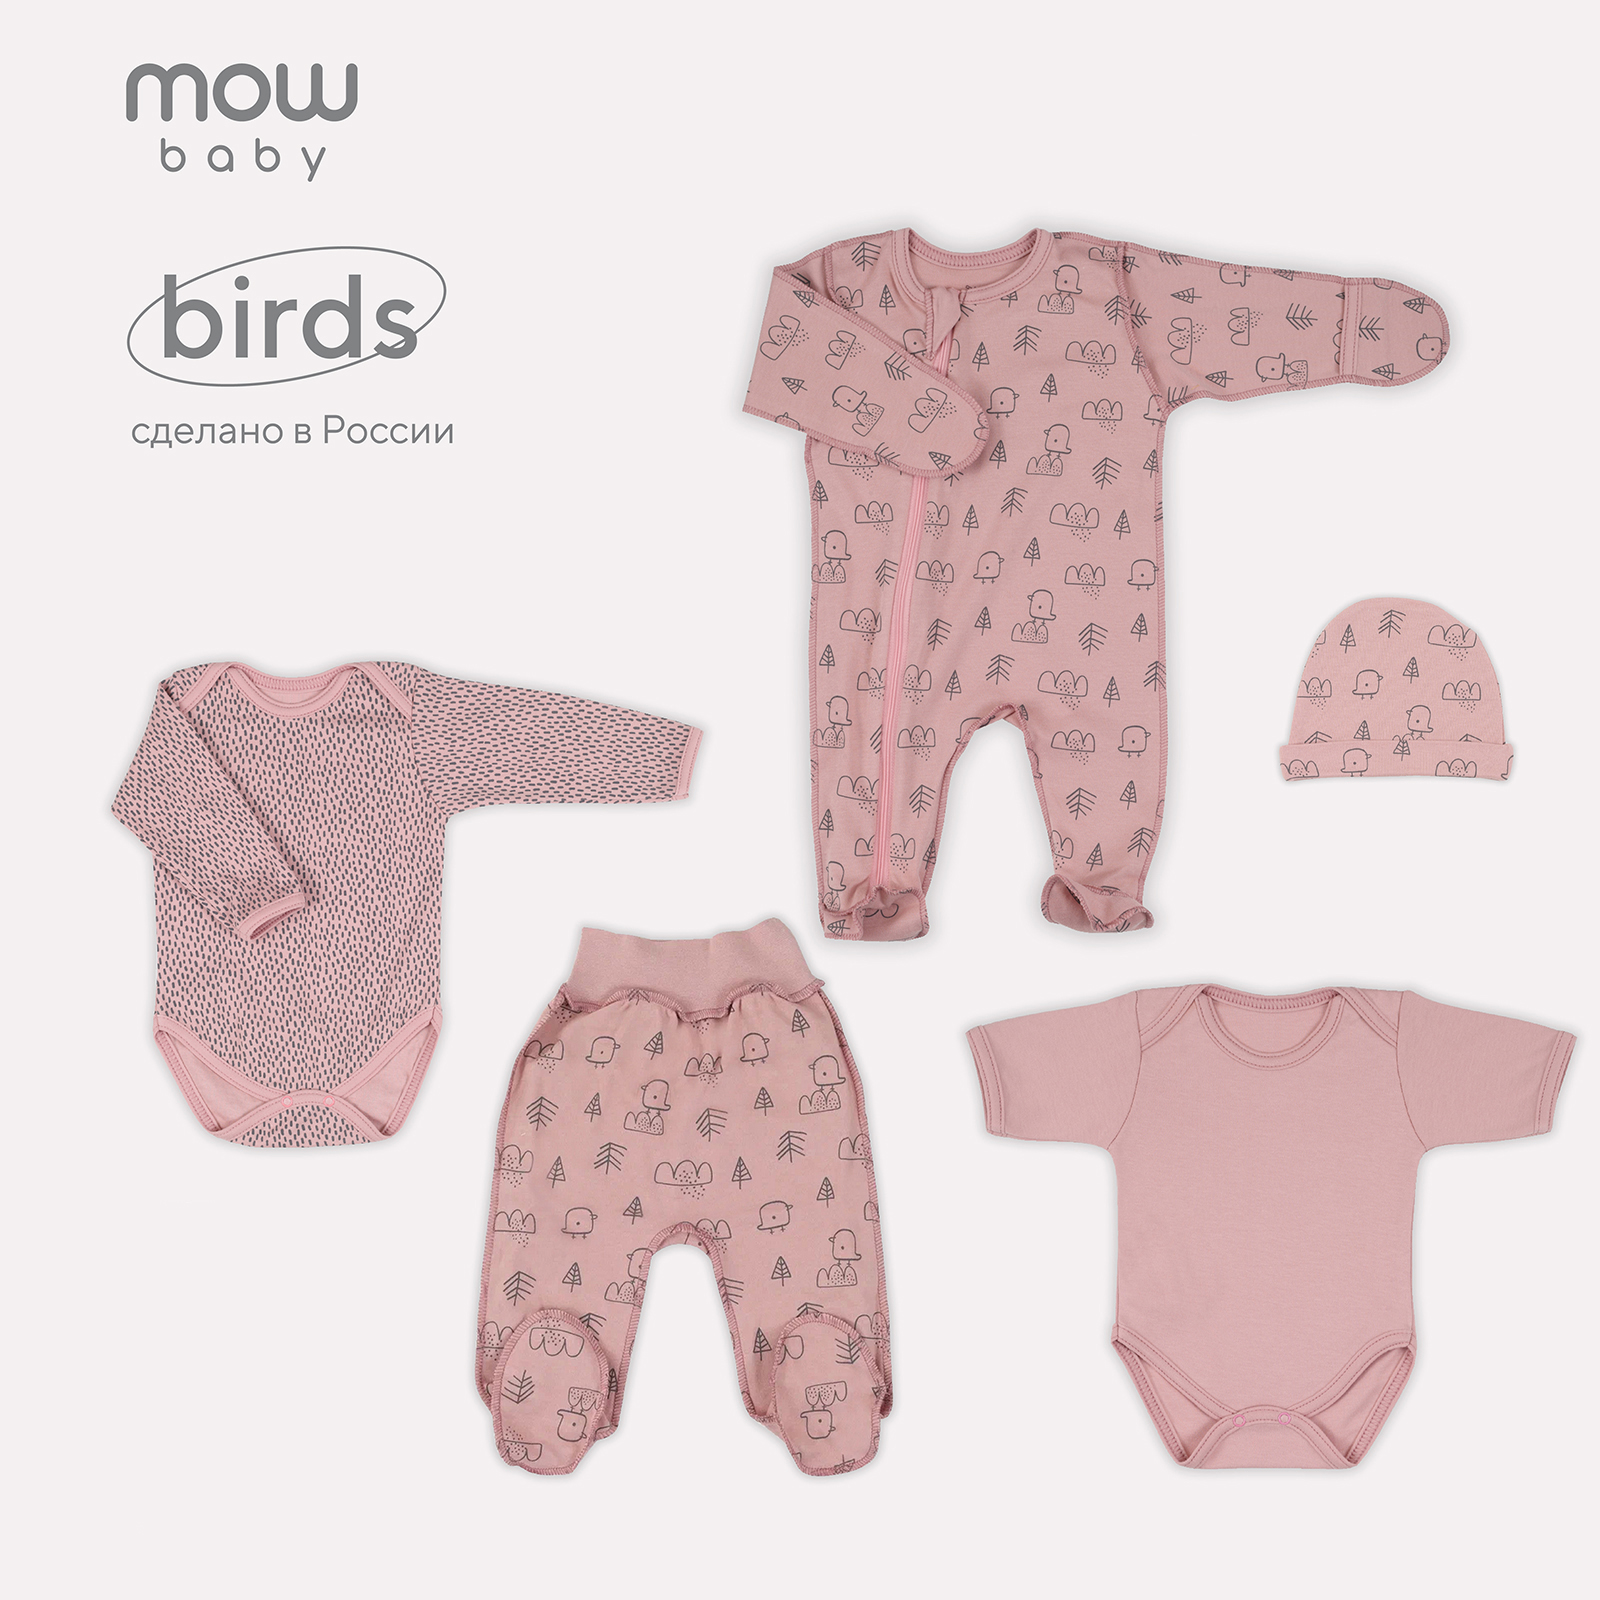 Комплект одежды для новорожденного MowBaby Birds Rose 5-82 р.62 (5 предметов) комплект одежды для новорожденного mowbaby birds yellow 5 82 р 56 5 предметов